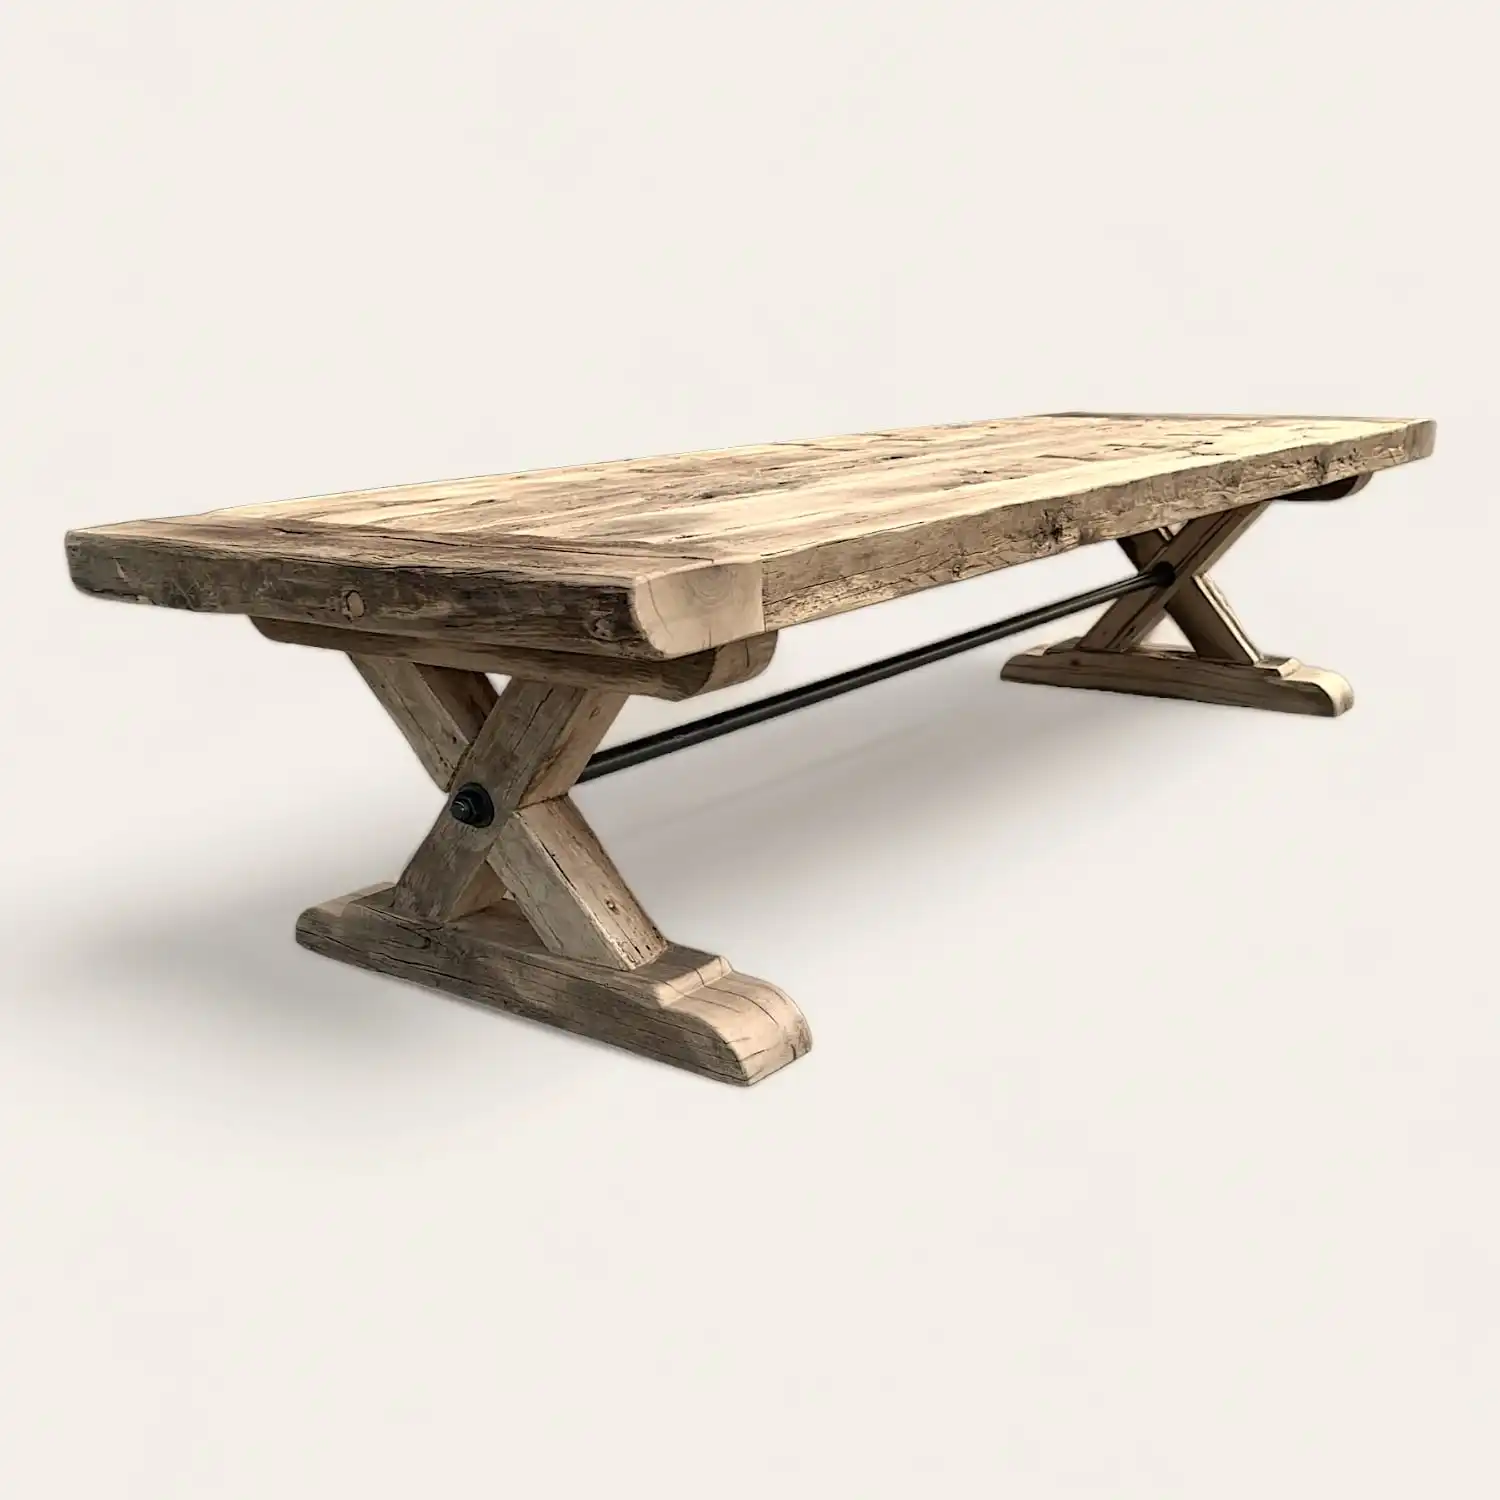  Une table à manger en bois rustique avec une base en métal. 